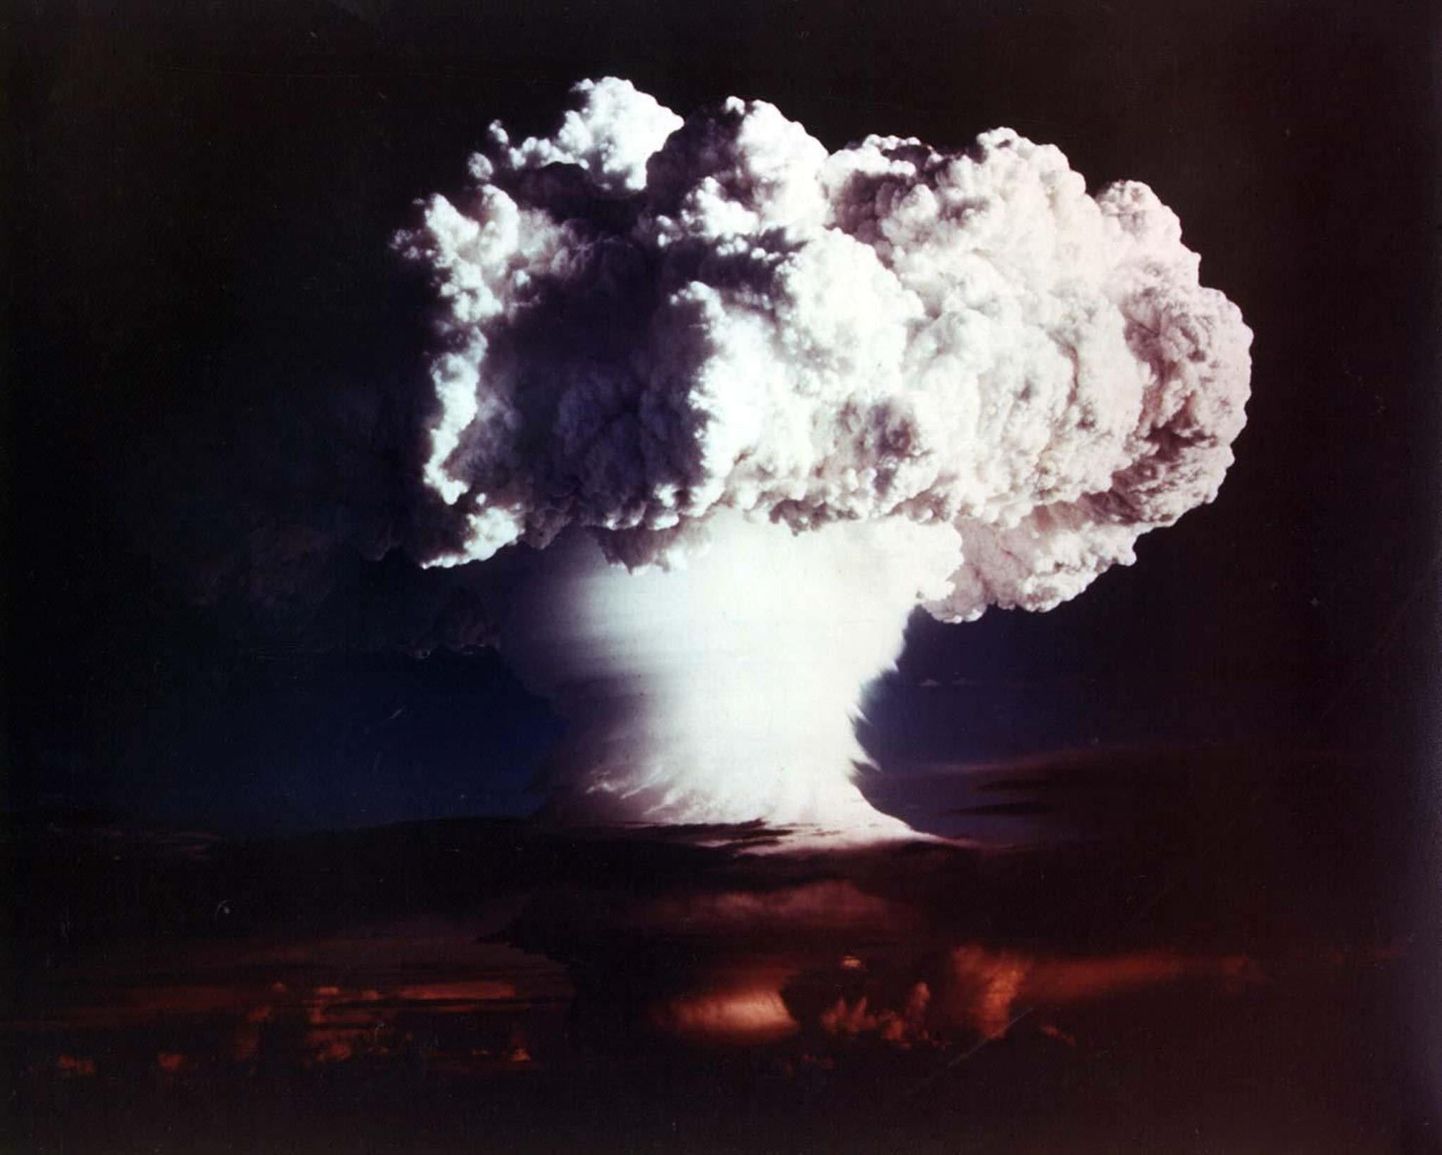 USA tuumakatsetus 1952. aastal Elugelabi saarel Marshalli saarestikus.